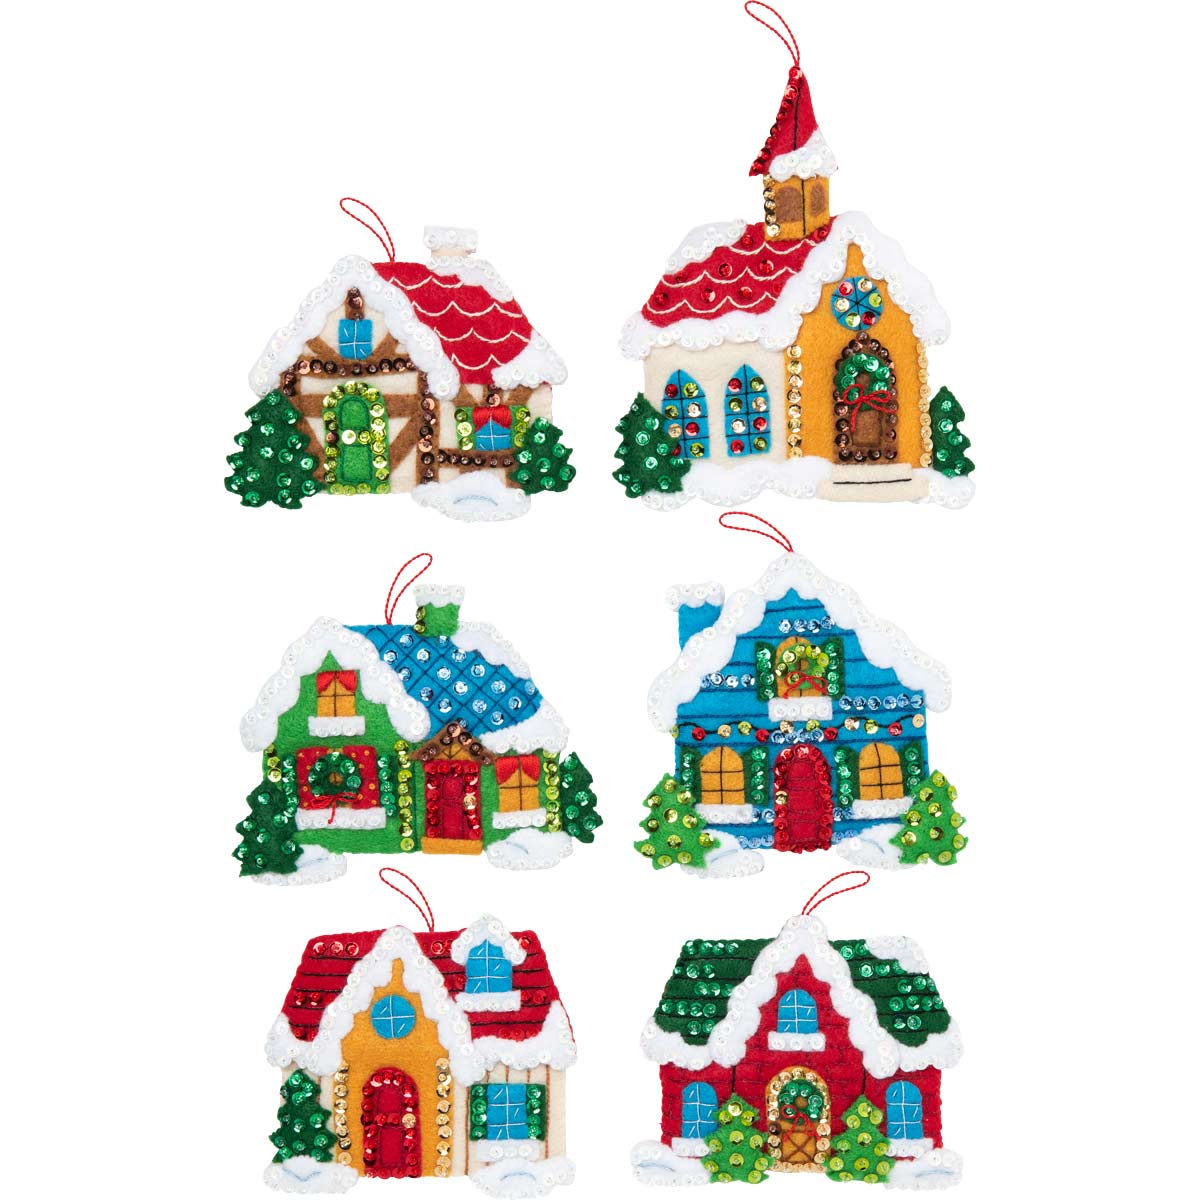 Bucilla ® Seasonal - Felt - Ornament Kits - Christmas Village - 89218E